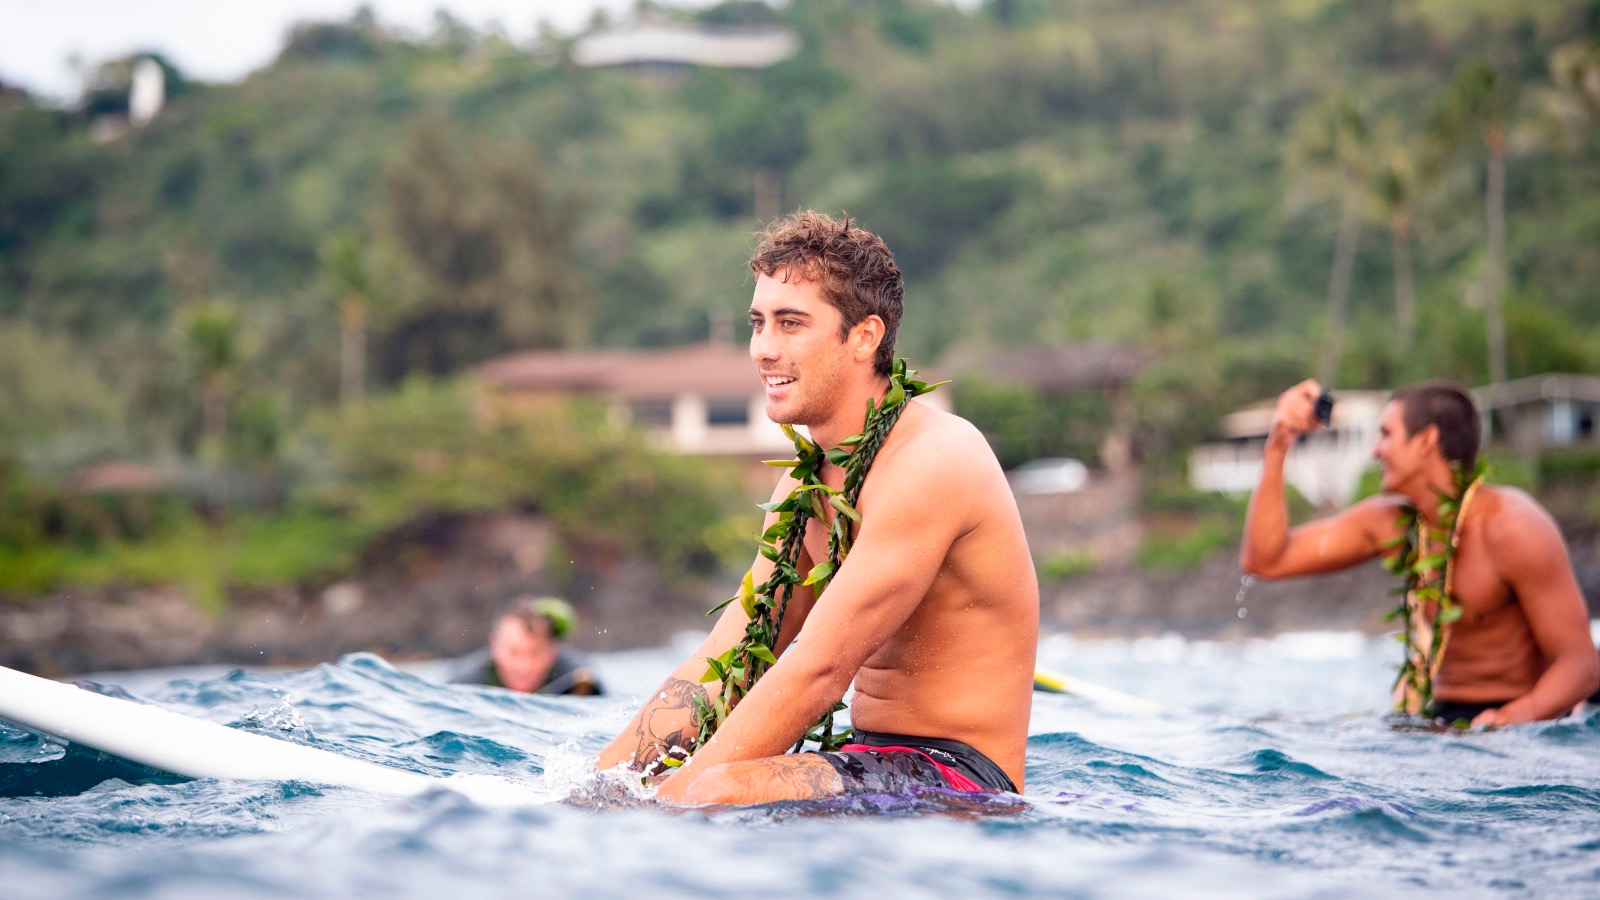 Hawaiian surfer Koa Rothman